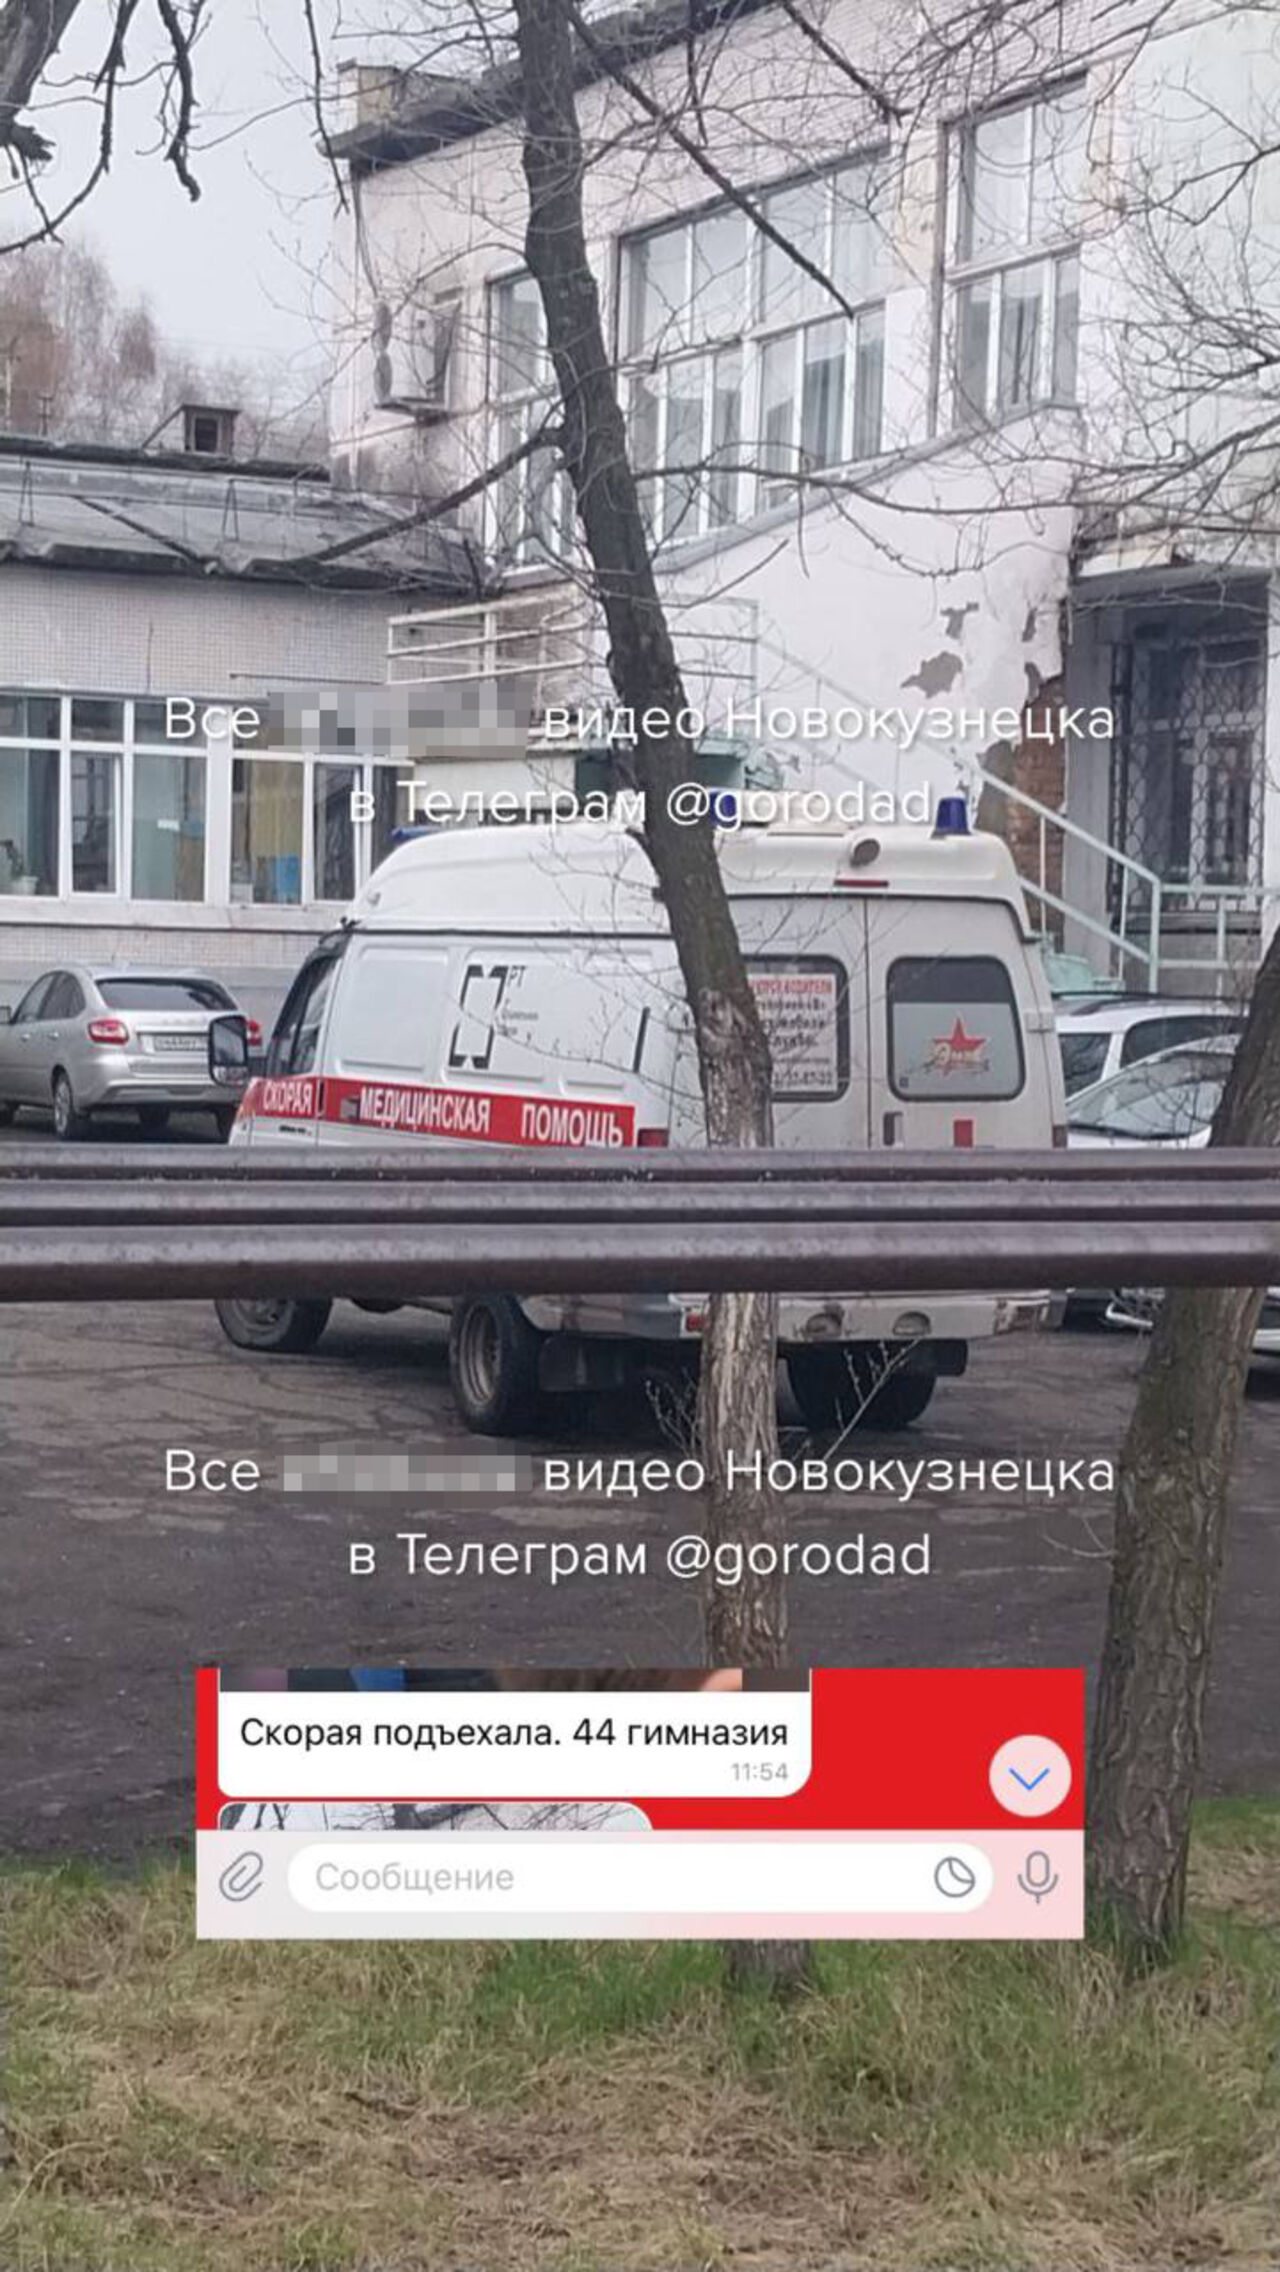 Эвакуация новокузнецкой школы прошла из-за неосторожности с перцовкой